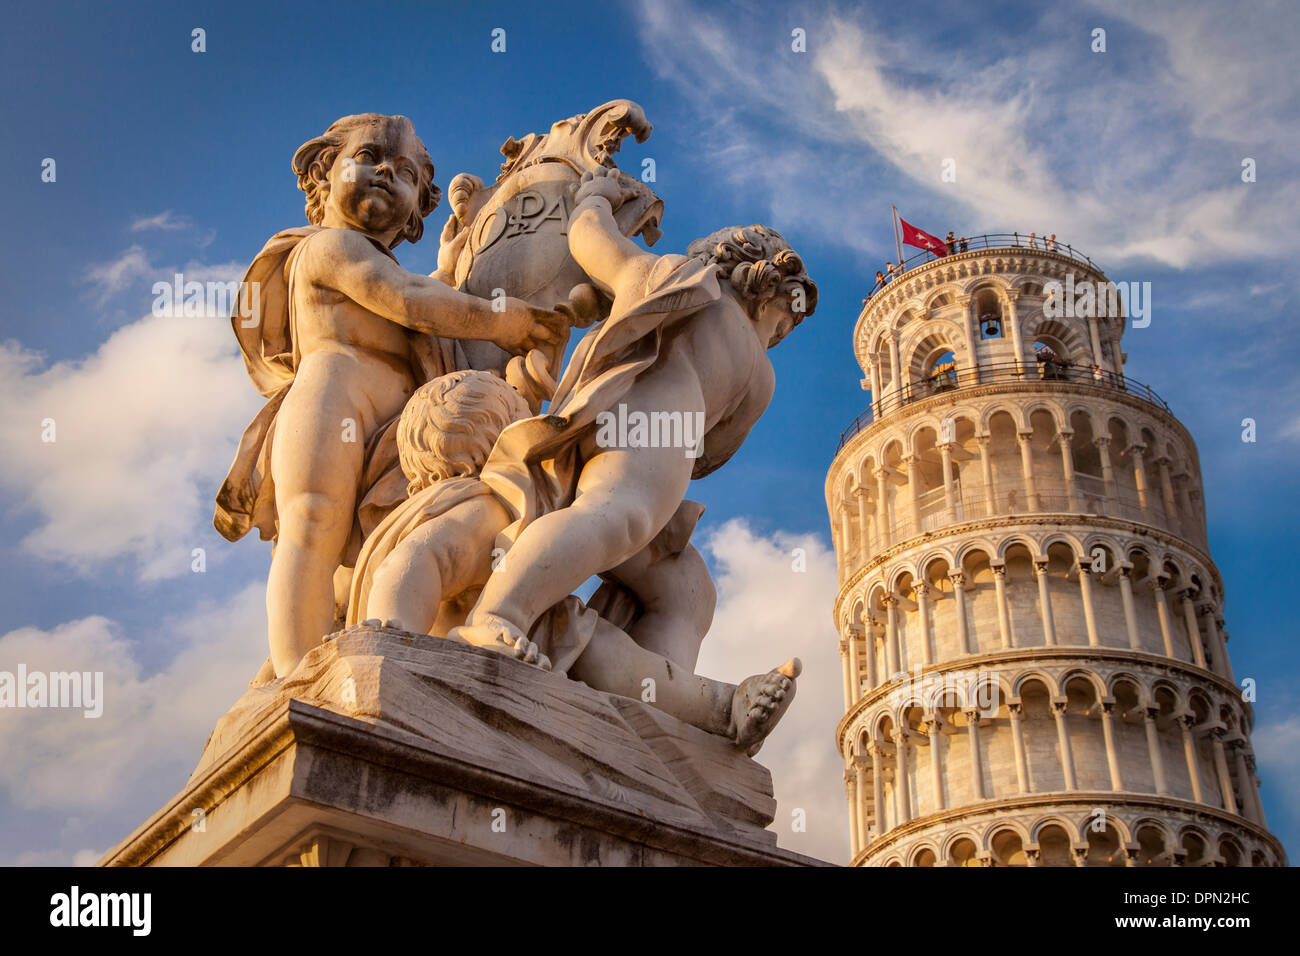 Cherubs below Pisa's Leaning tower, Tuscany, Italy Stock Photo